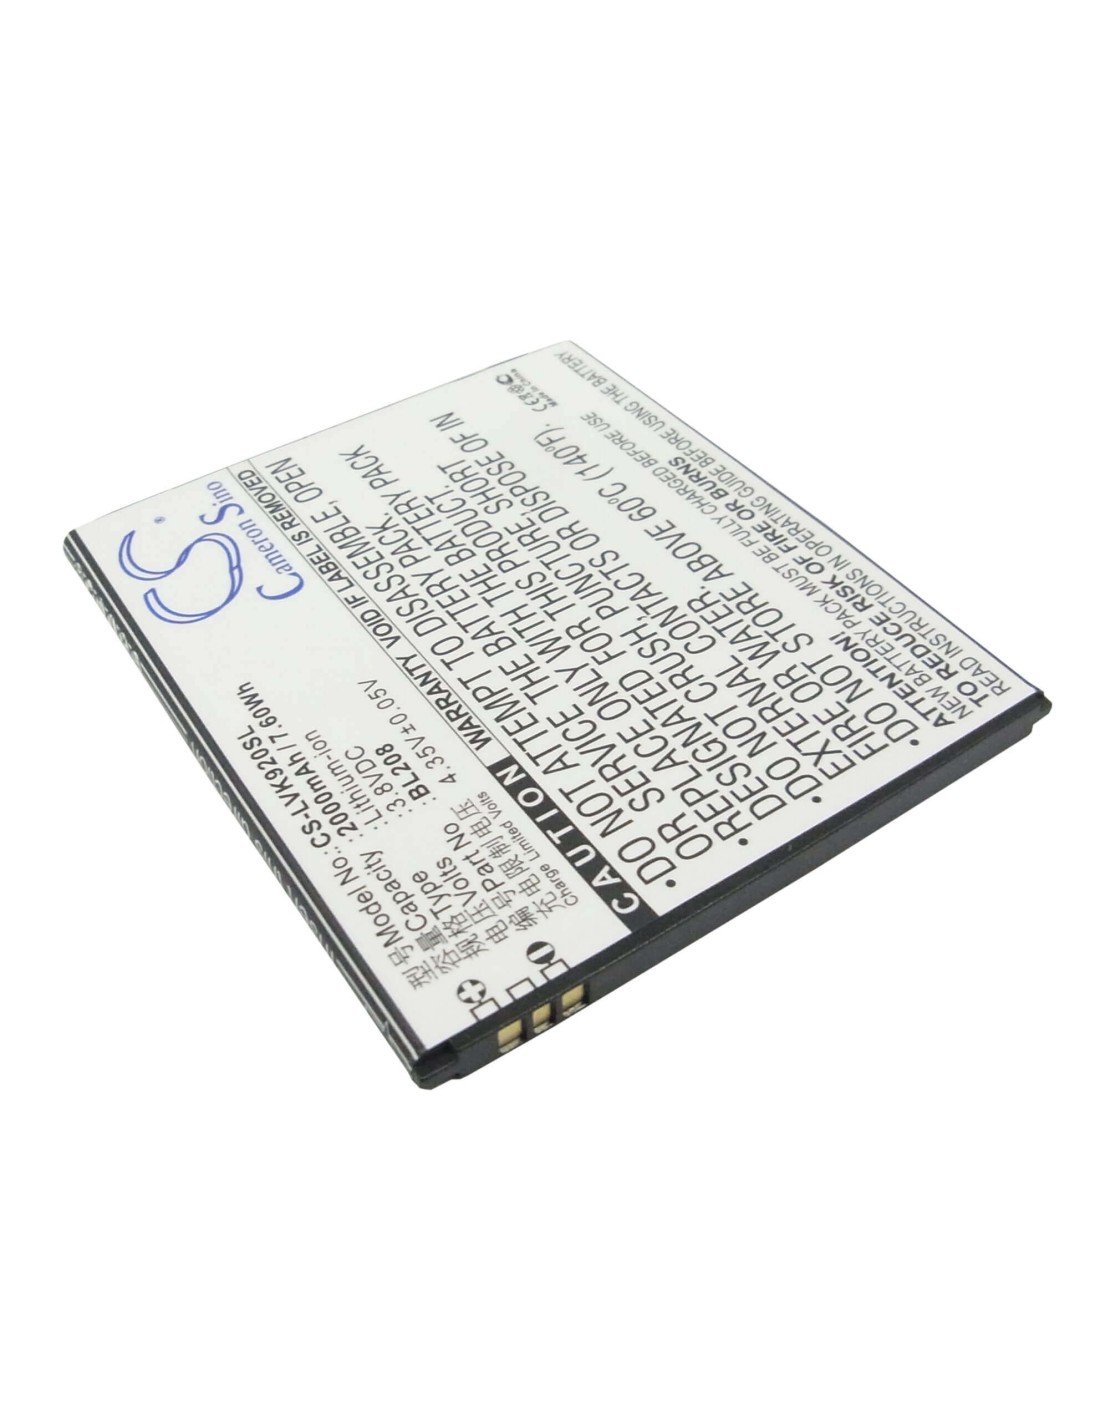 Battery for Lenovo S920 3.8V, 2000mAh - 7.60Wh